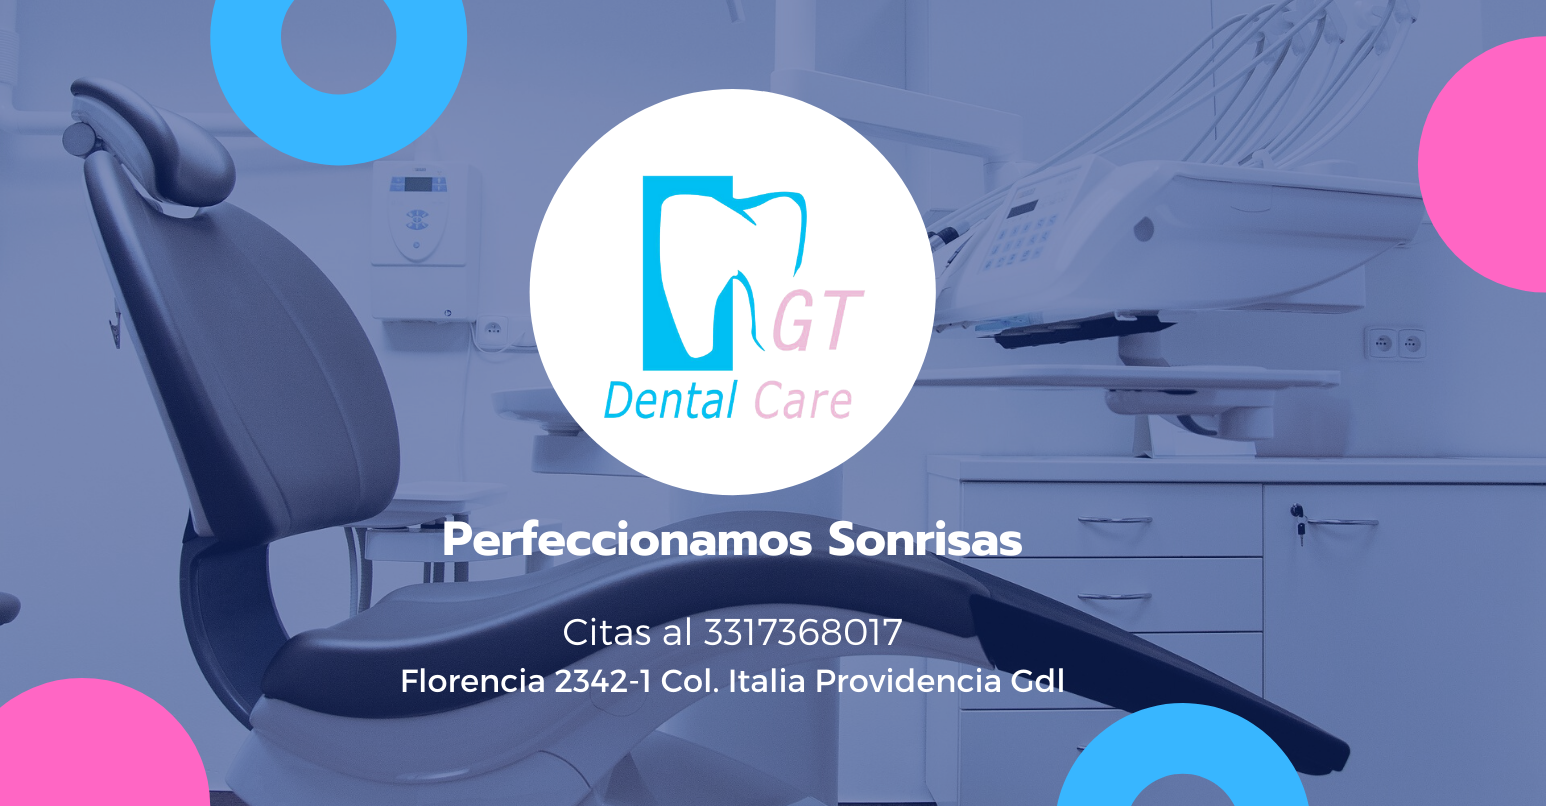 GT Dental Care